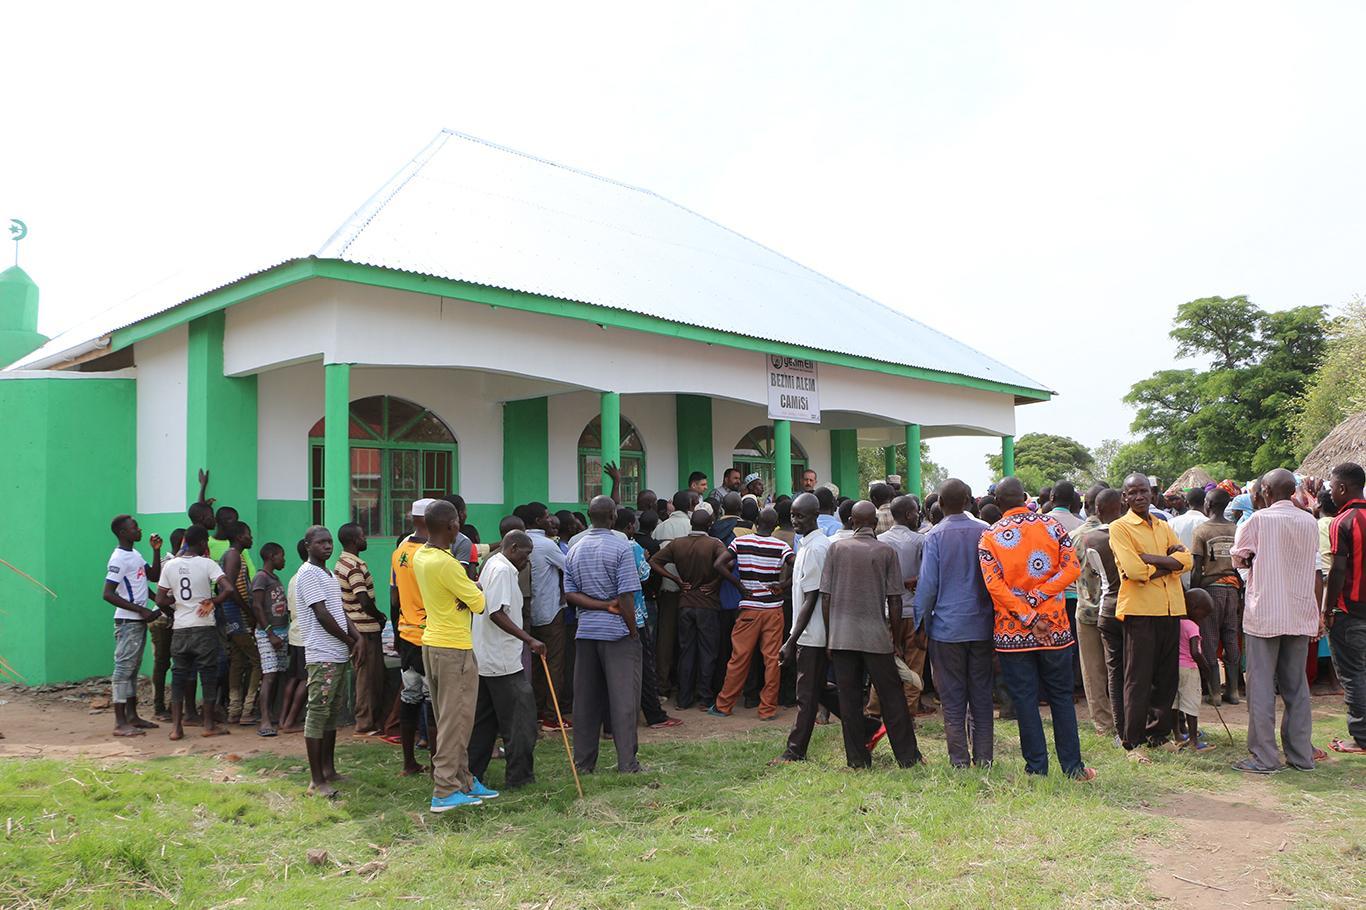 ساخت دو مسجد در اوگاندا توسط وقف دست ایتام اروپا